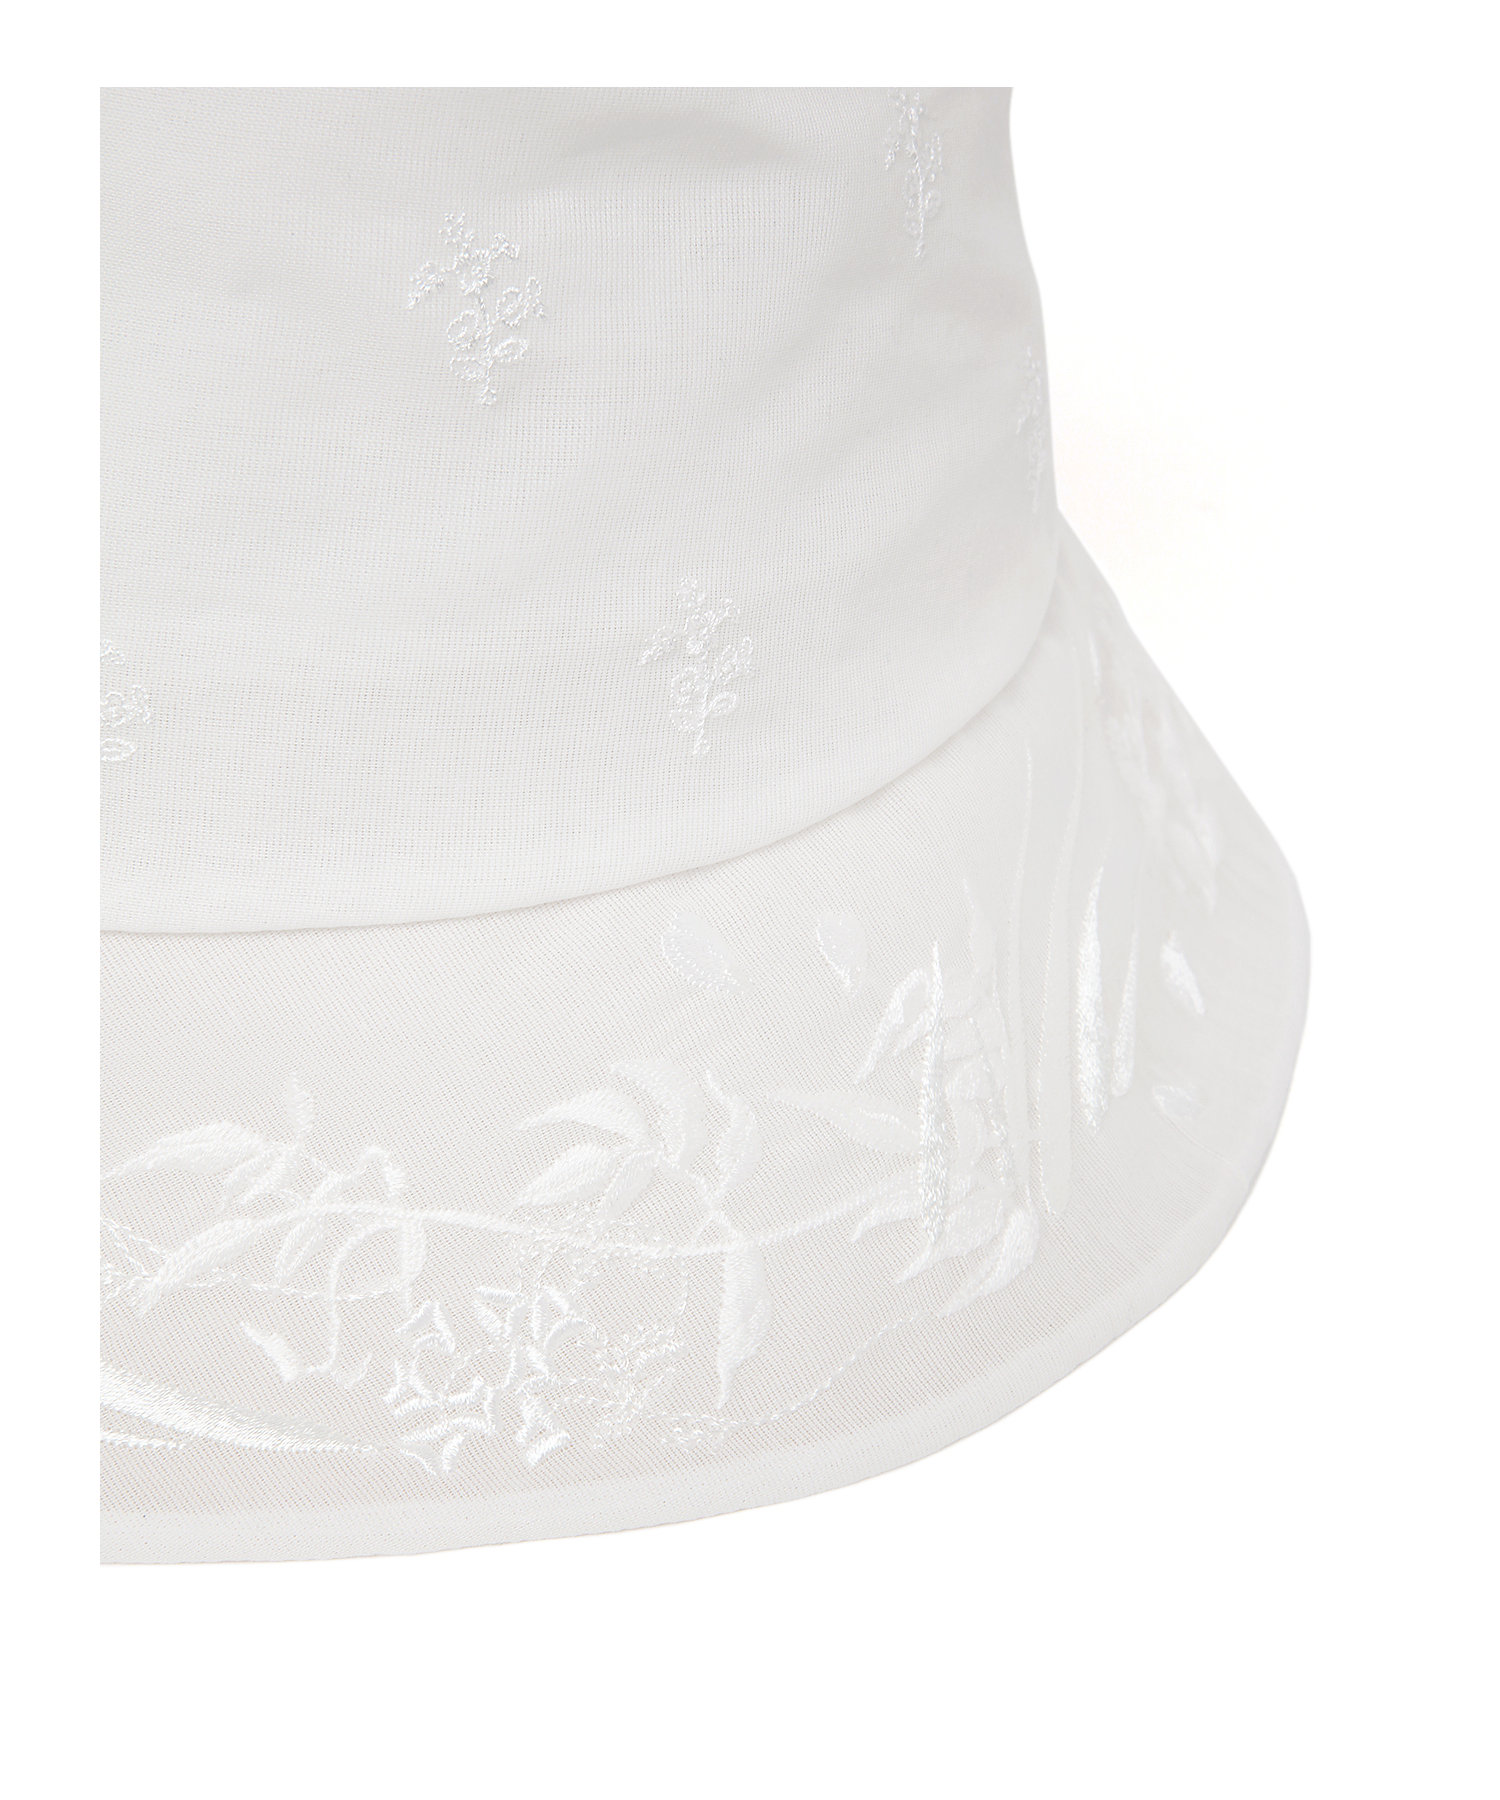 グッズ公式通販サイト  Hat Bucket Embroidered Floral mame 新品タグ付 ハット